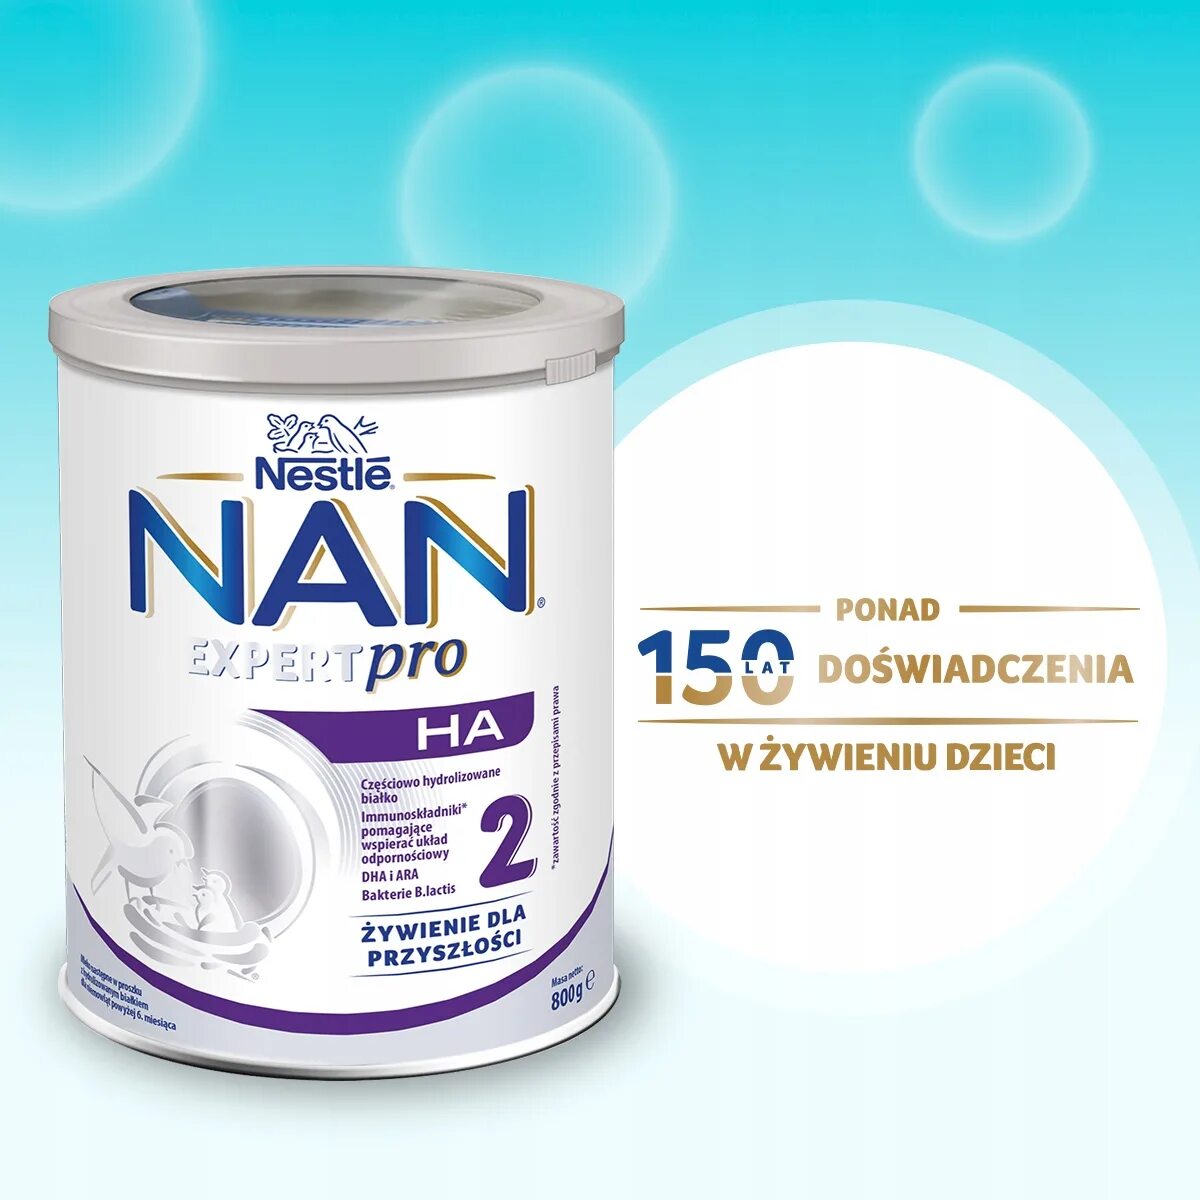 Нан антиаллергия купить. Nan Expert Pro гипоаллергенный 1. Nan Expert Pro гипоаллергенный 2. Nestle nan Expert Pro. Nestle nan Expert Pro гипоаллергенный.